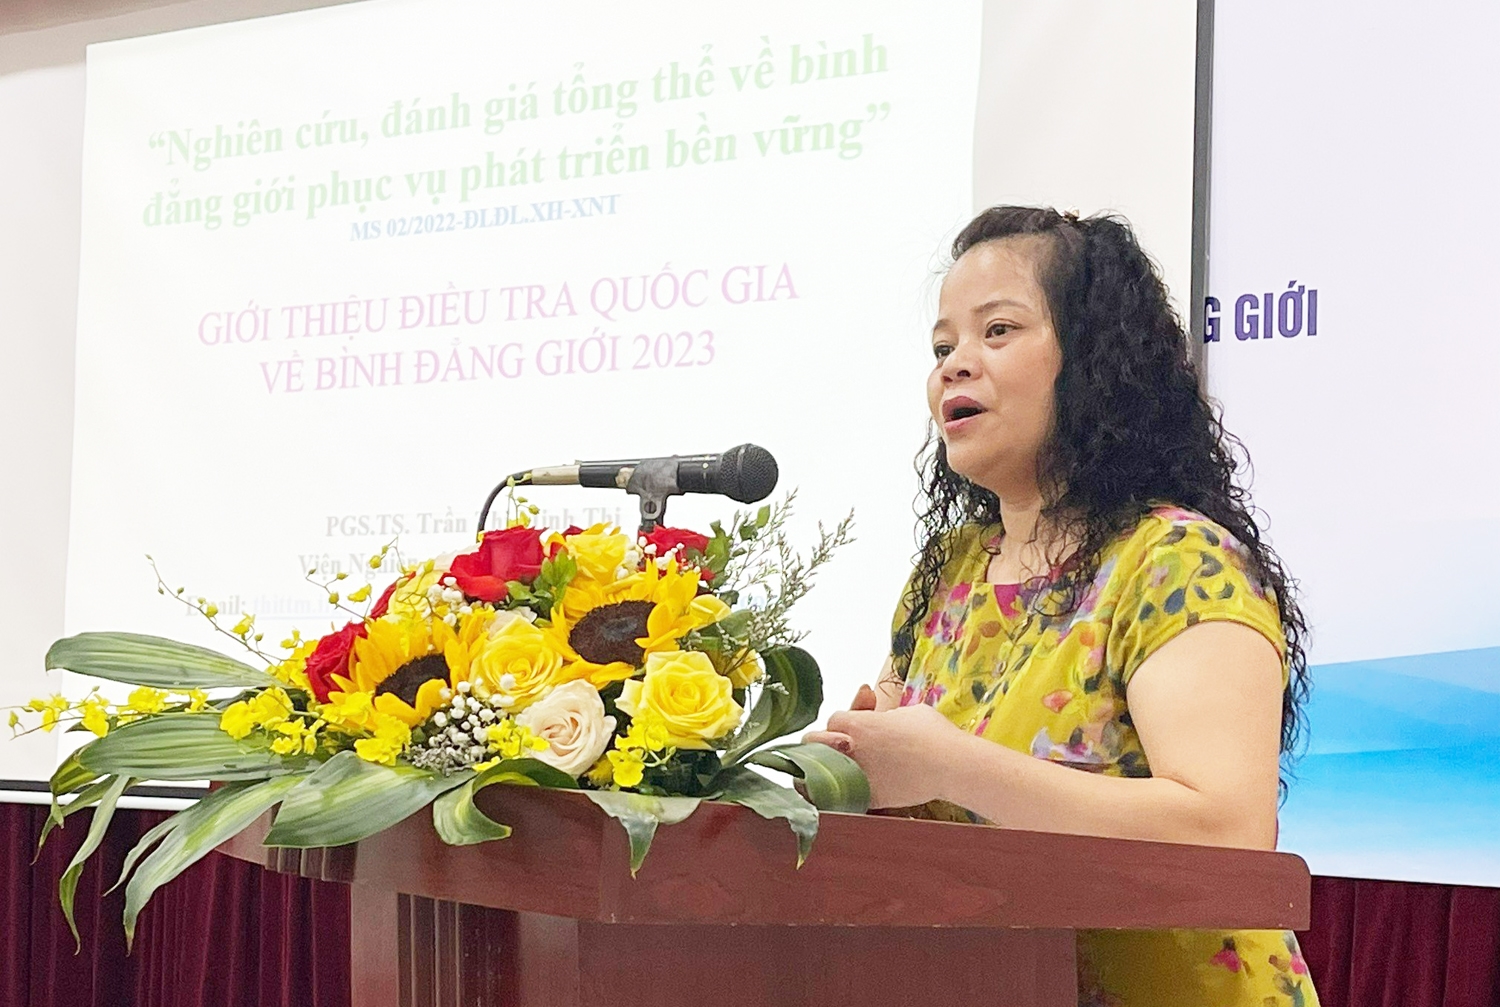 PGs.Ts. Trần Thị Minh Thi - Viện Nghiên cứu Gia đình và Giới, Ban Chủ nhiệm Đề tài trình bày báo cáo tại Hội thảo